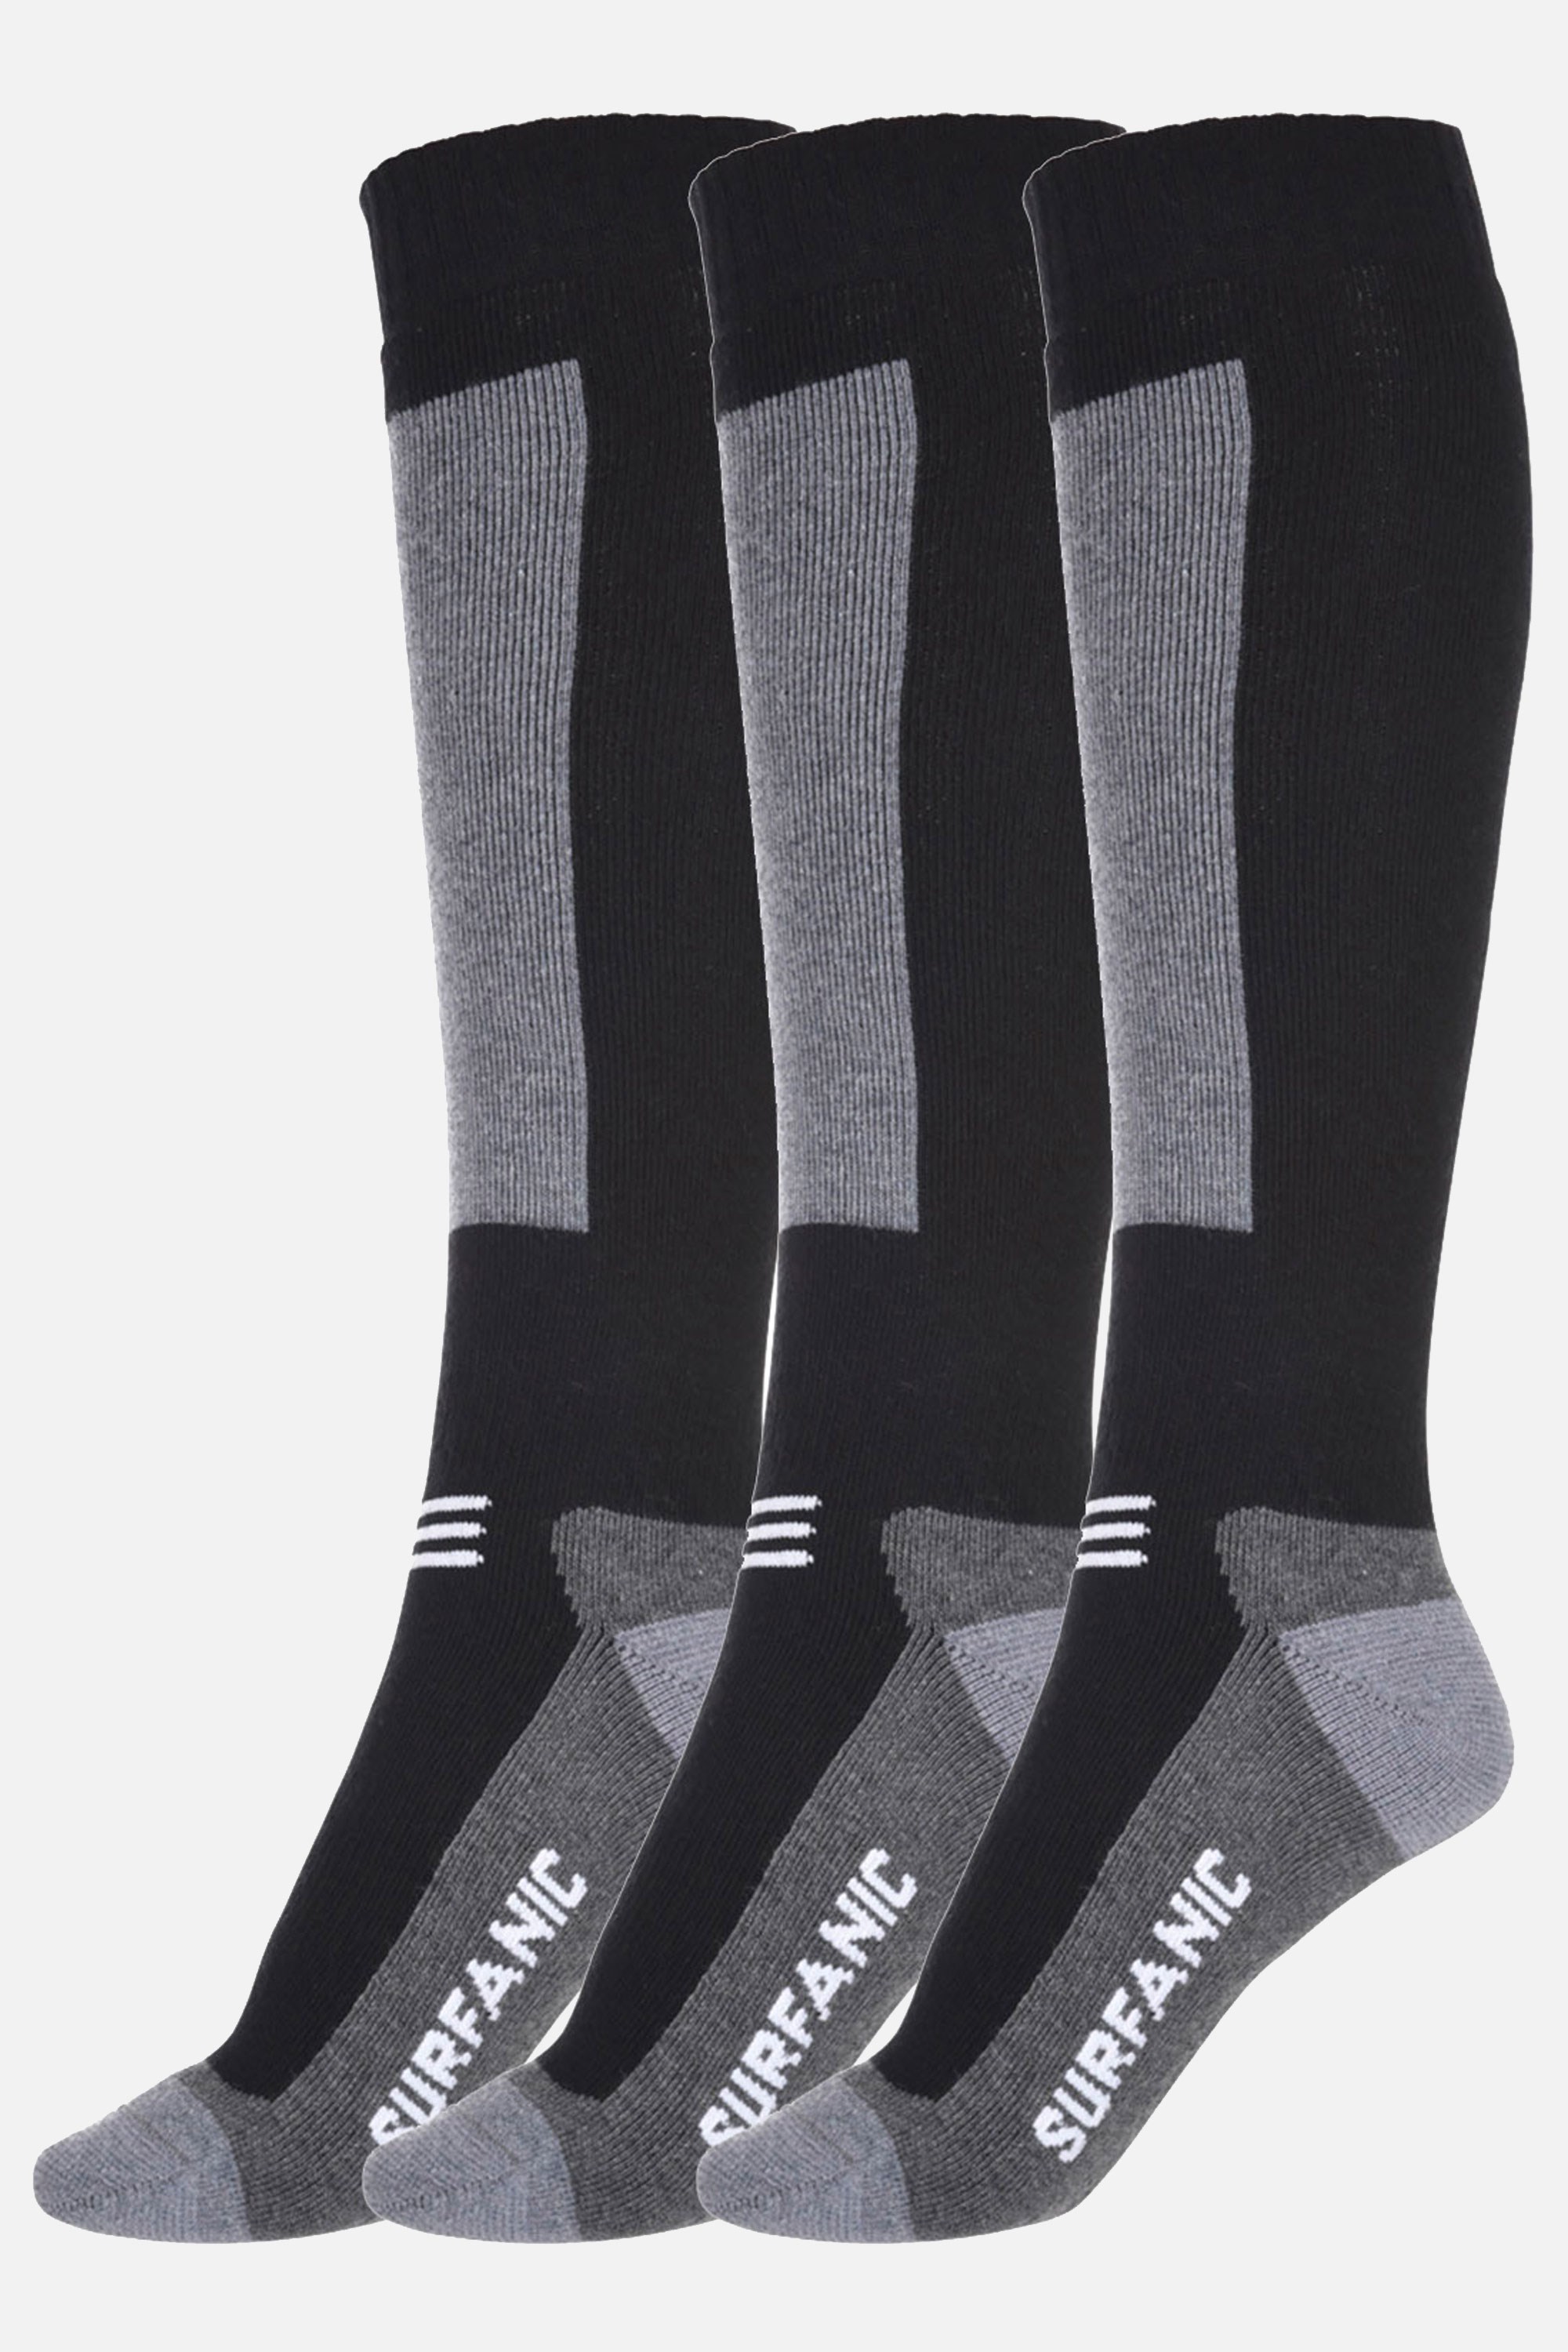 Endurance Merino Socks 3-Pack -